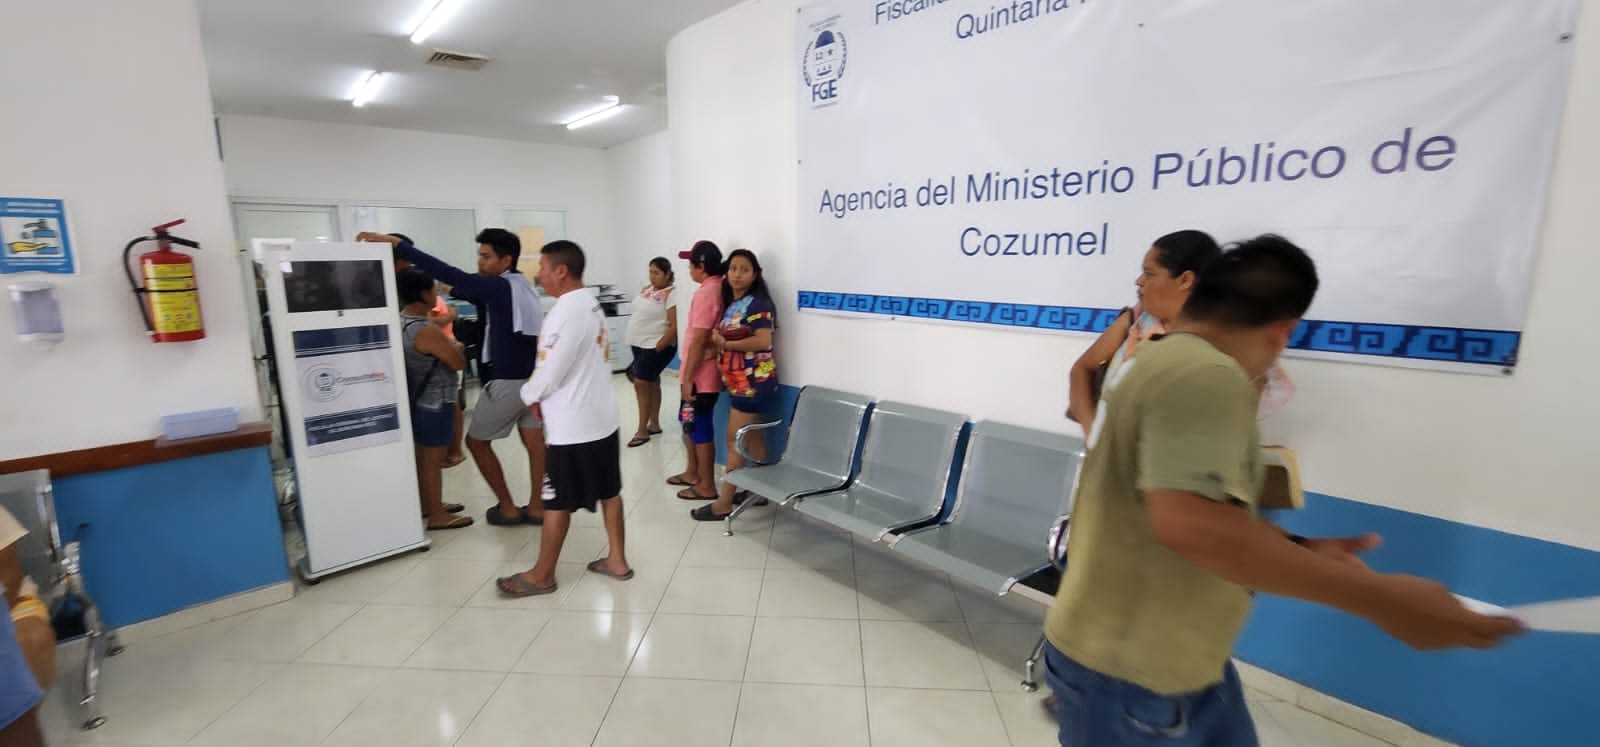 Acusan a la Fiscalía de Quintana Roo en Cozumel por robo y abuso de poder